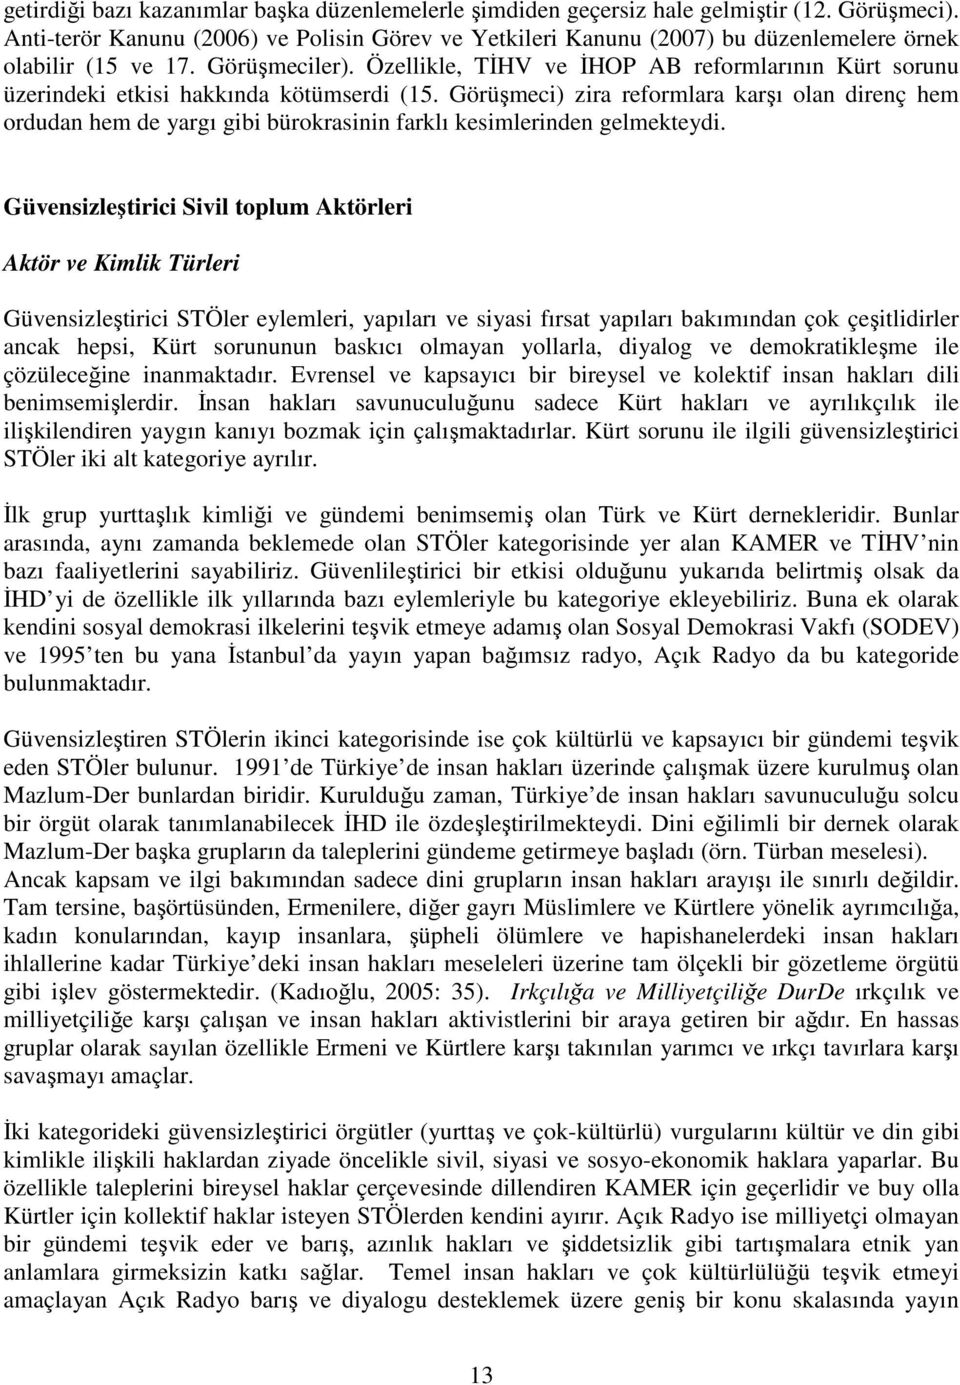 Özellikle, TĐHV ve ĐHOP AB reformlarının Kürt sorunu üzerindeki etkisi hakkında kötümserdi (15.